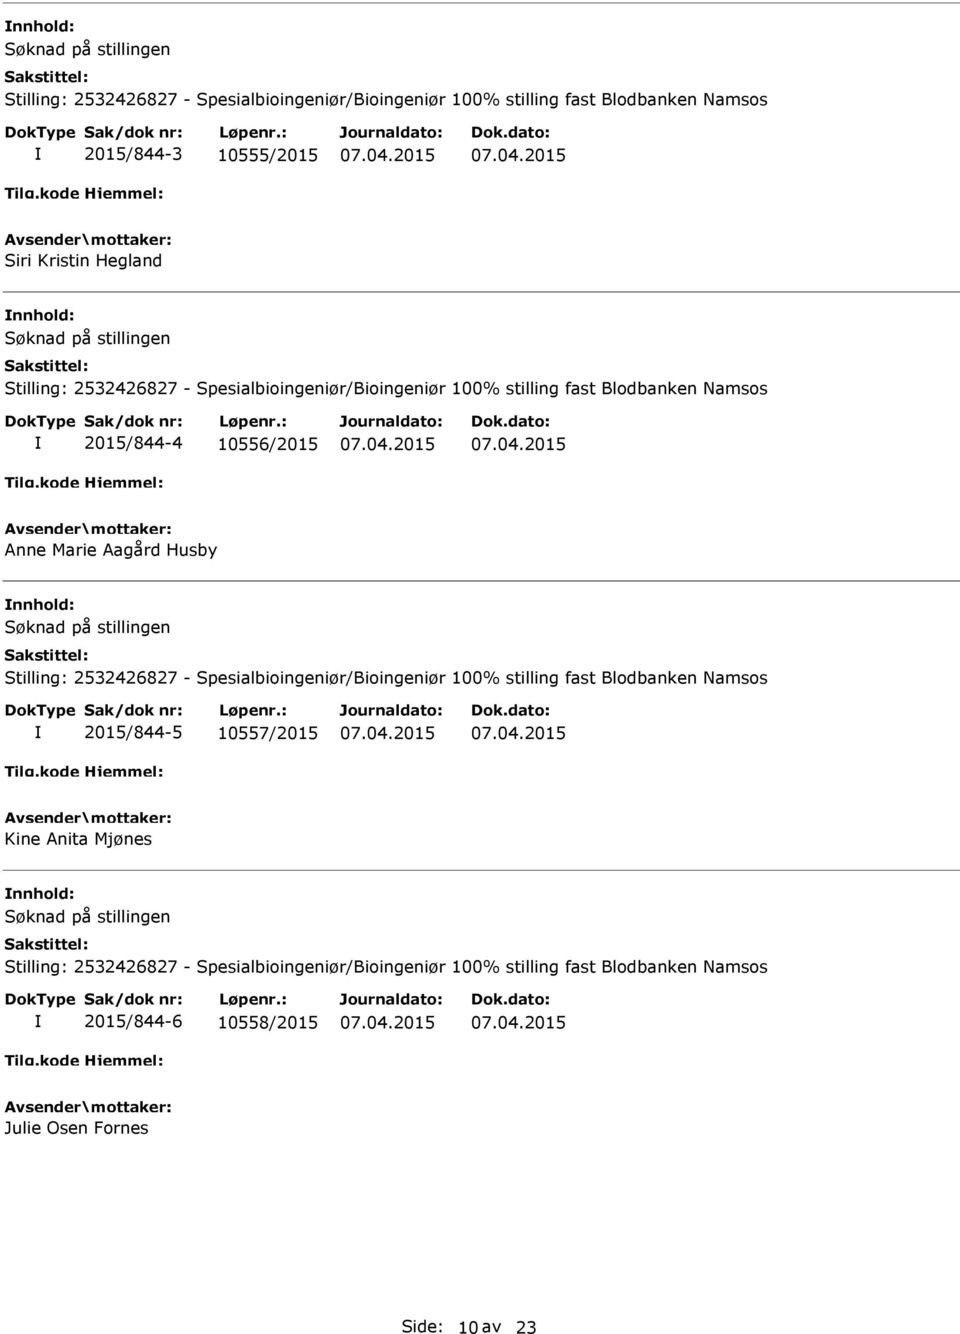 nnhold: Stilling: 2532426827 - Spesialbioingeniør/Bioingeniør 100% stilling fast Blodbanken Namsos 2015/844-5 10557/2015 Kine Anita Mjønes